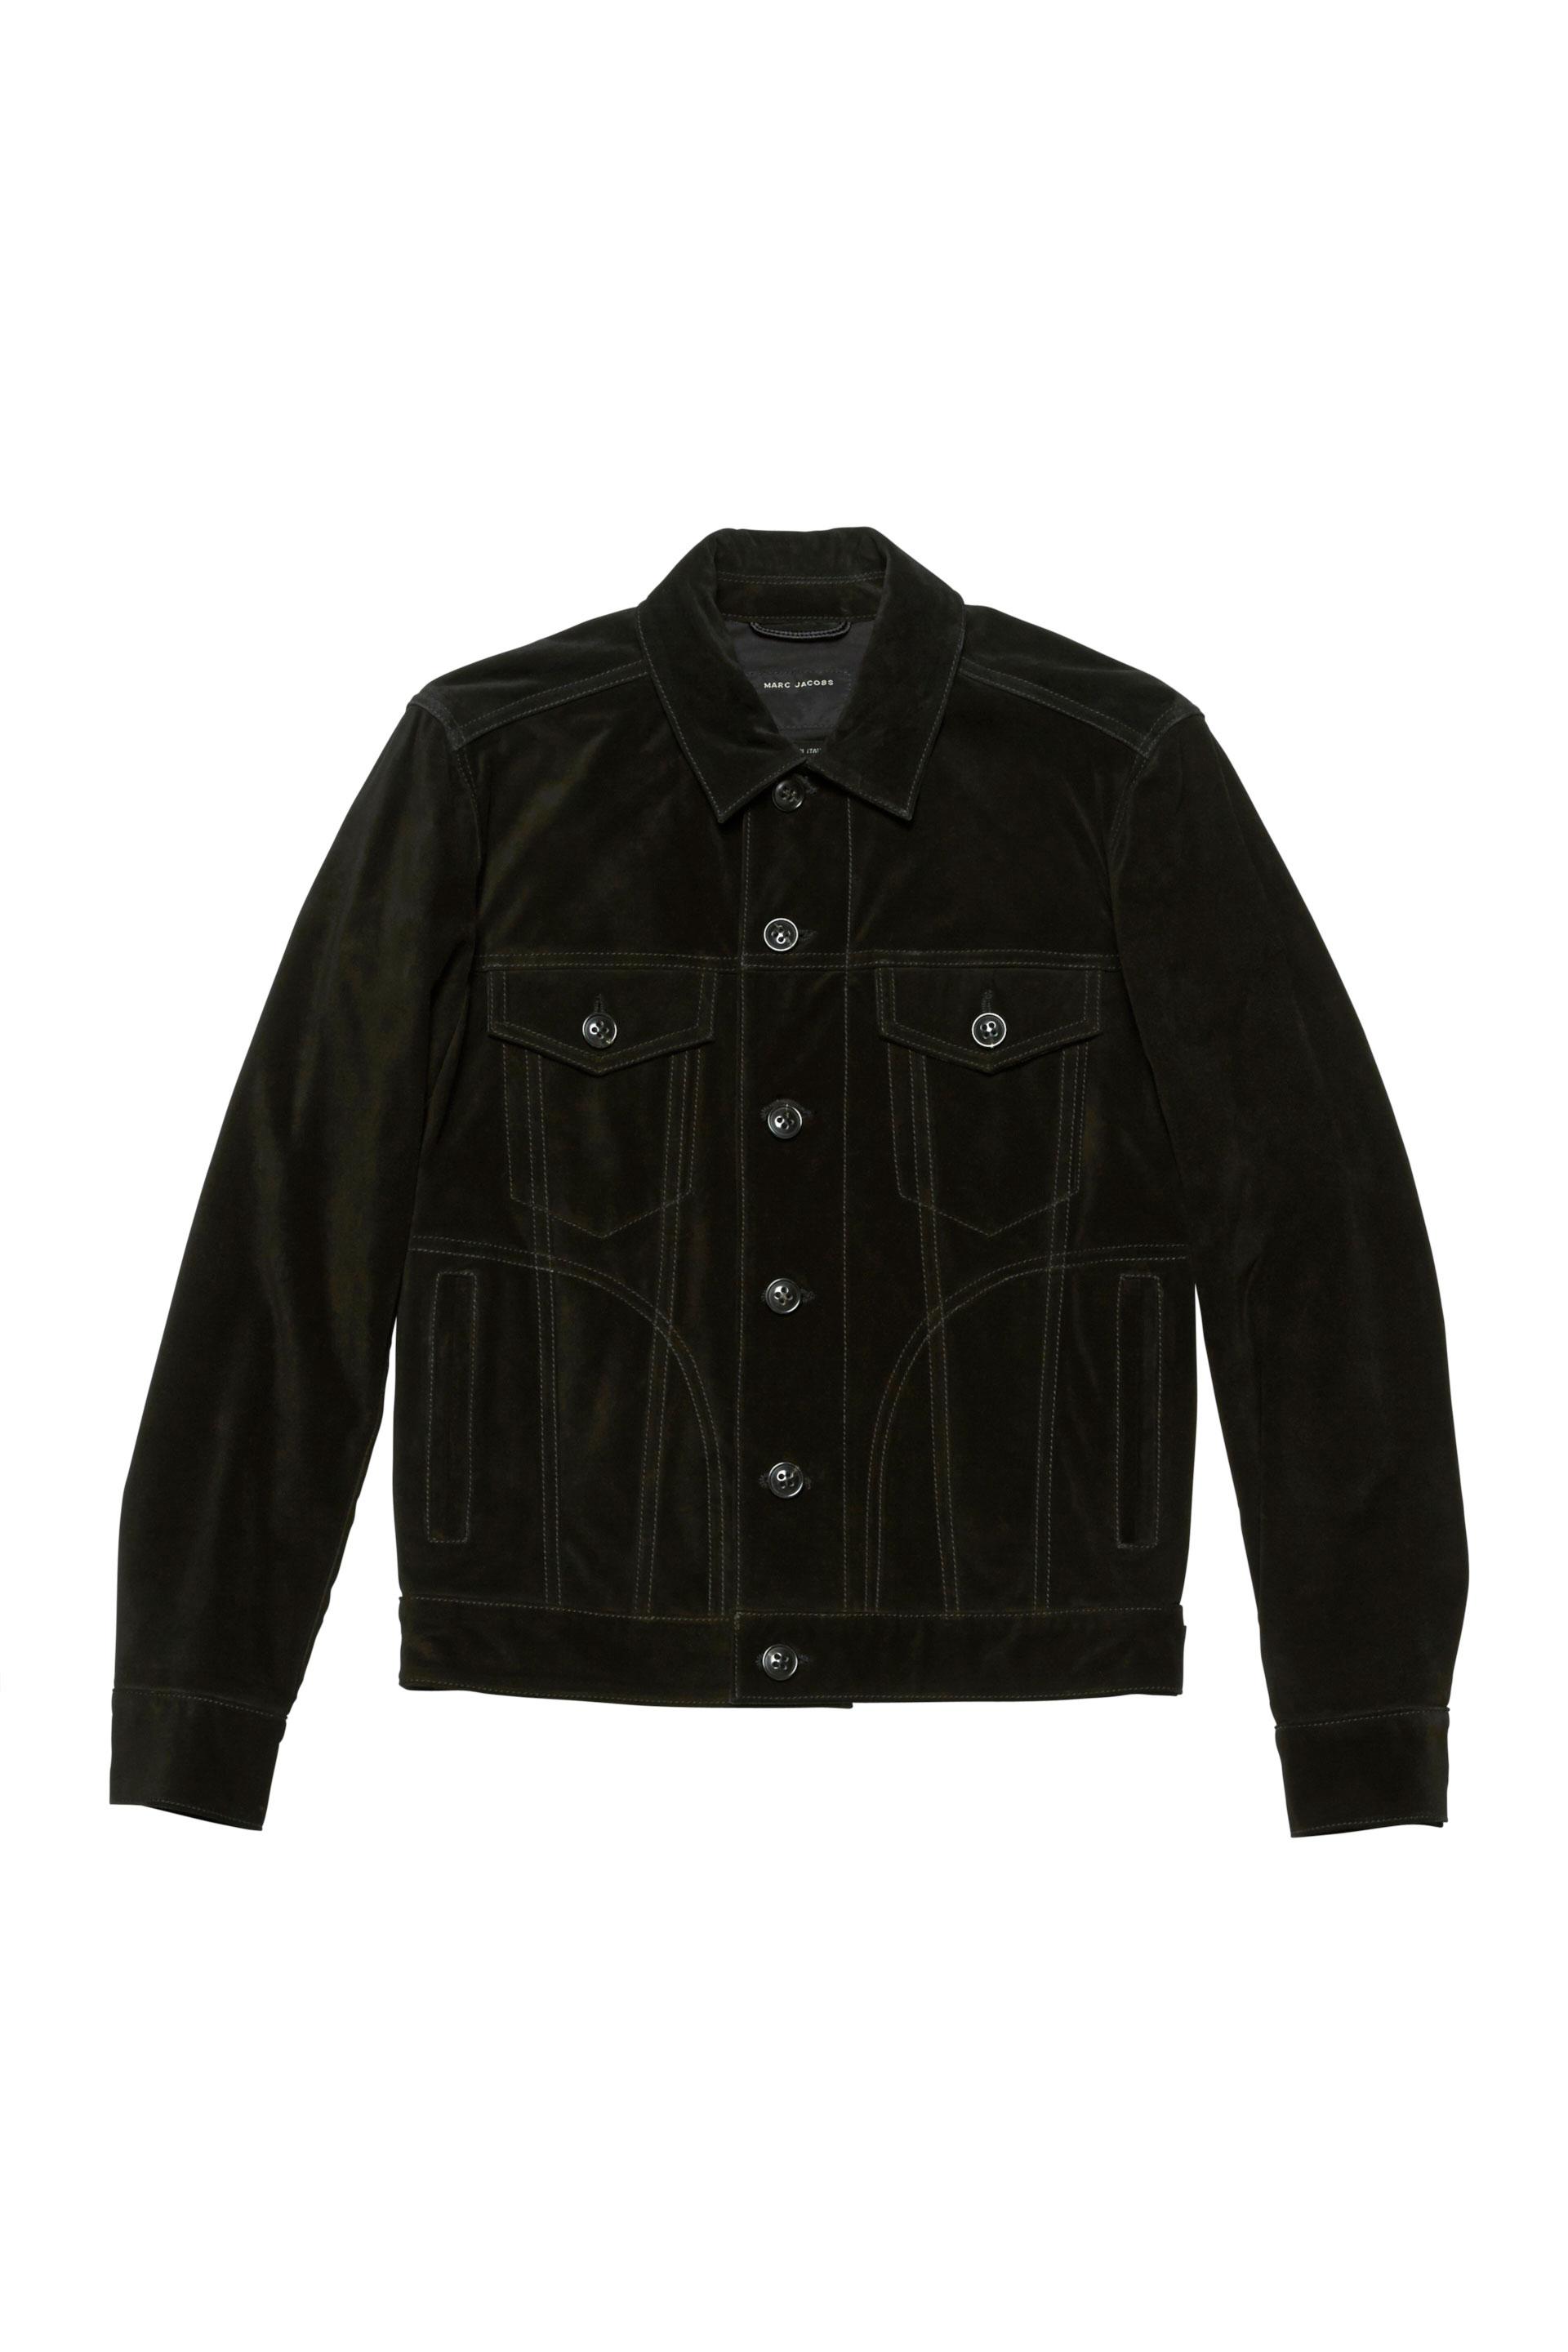 Marc Jacobs Suede Trucker Jacket In 900 Black | ModeSens